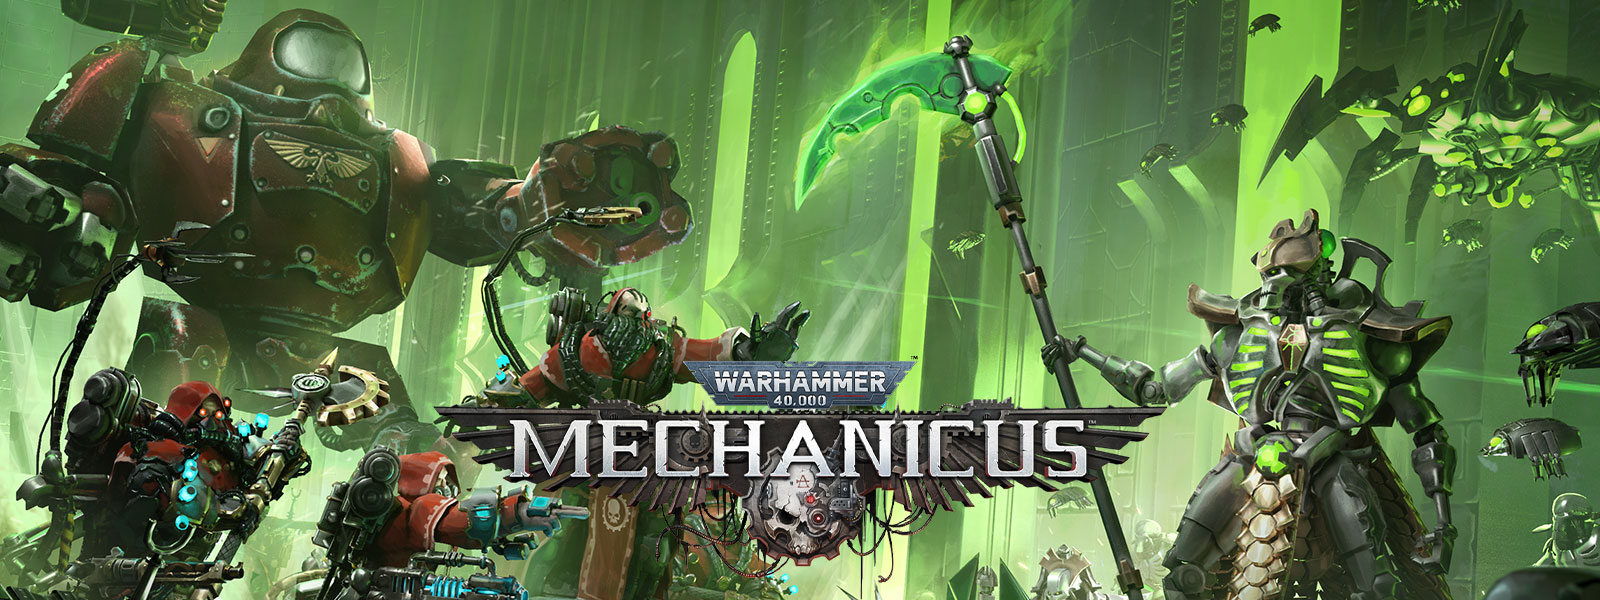 Warhammer 40,000: Mechanicus, To højteknologiske hære mødes i kamp.